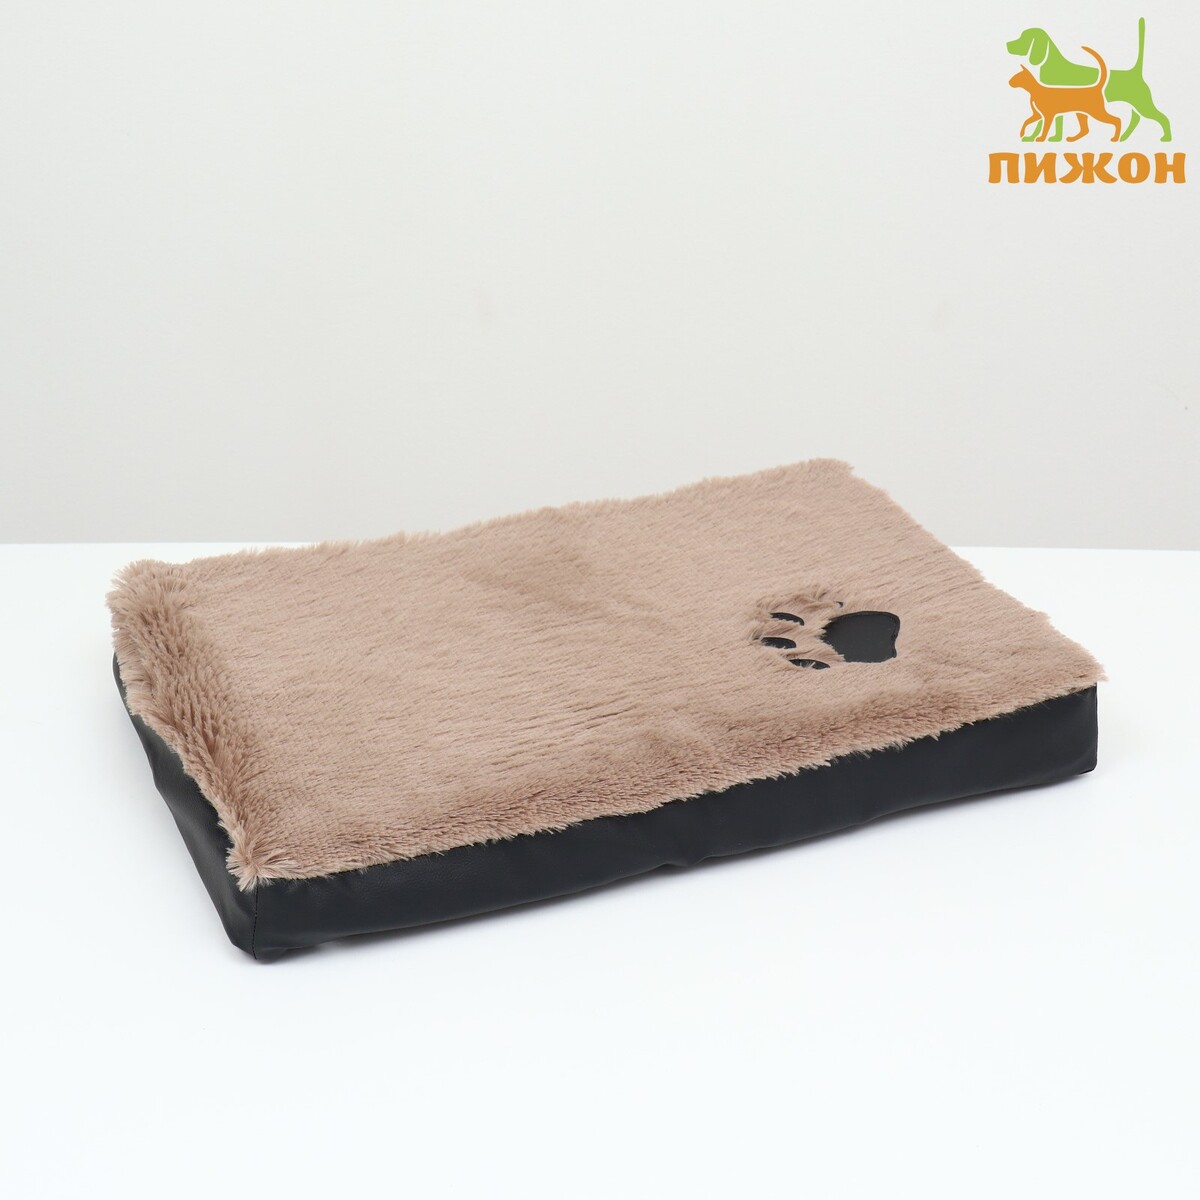 Перина прямоугольная мех, экокожа, периотек, 60 х 40 х 10 см, коричневый носки для мебели cappio коричневый